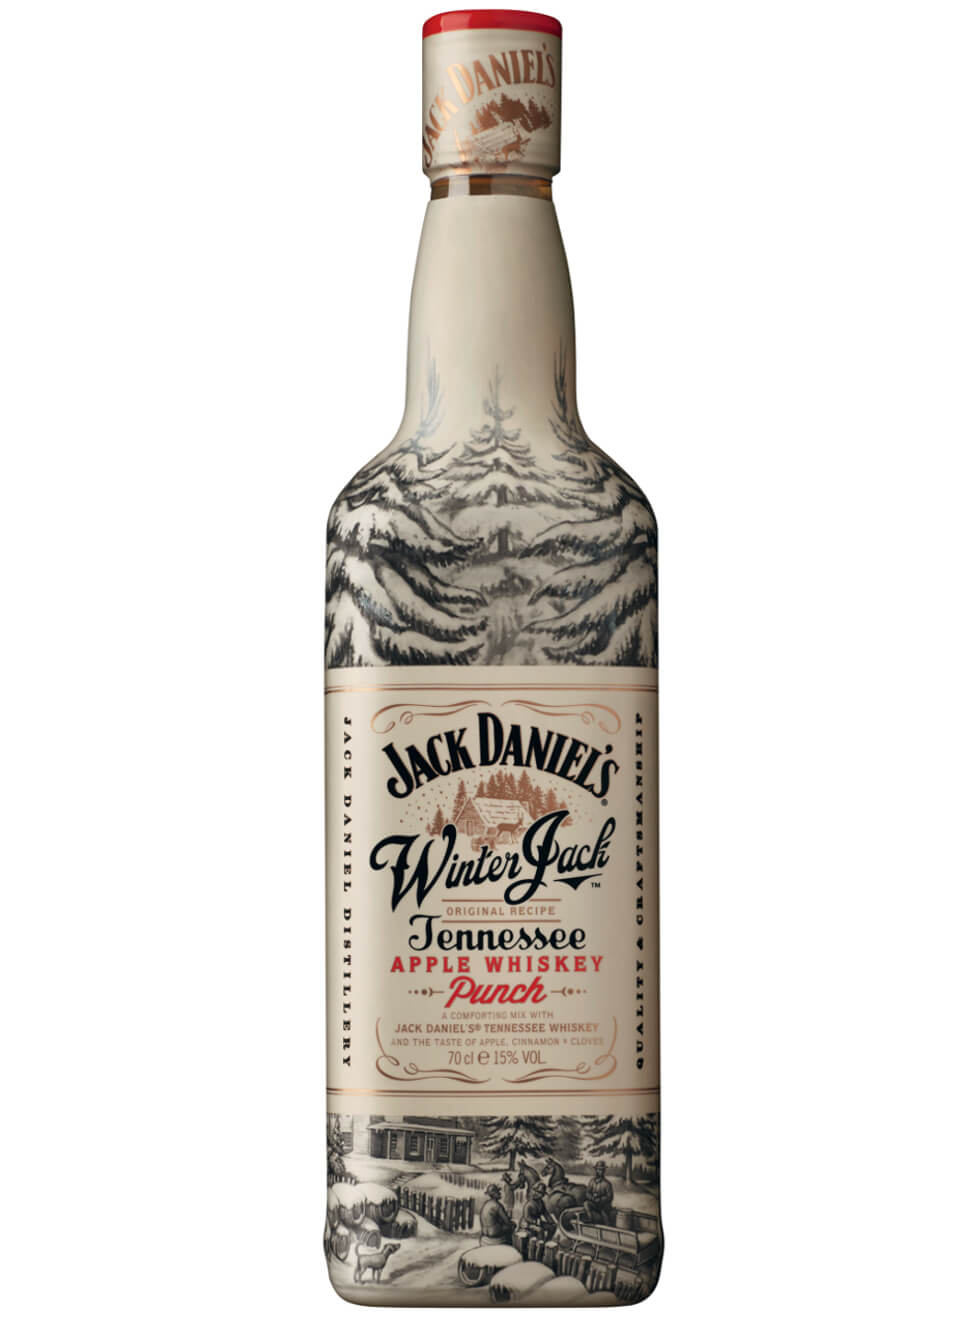 Jack Daniels Winter Jack Whiskey Punch 0,7 L günstig kaufen ...